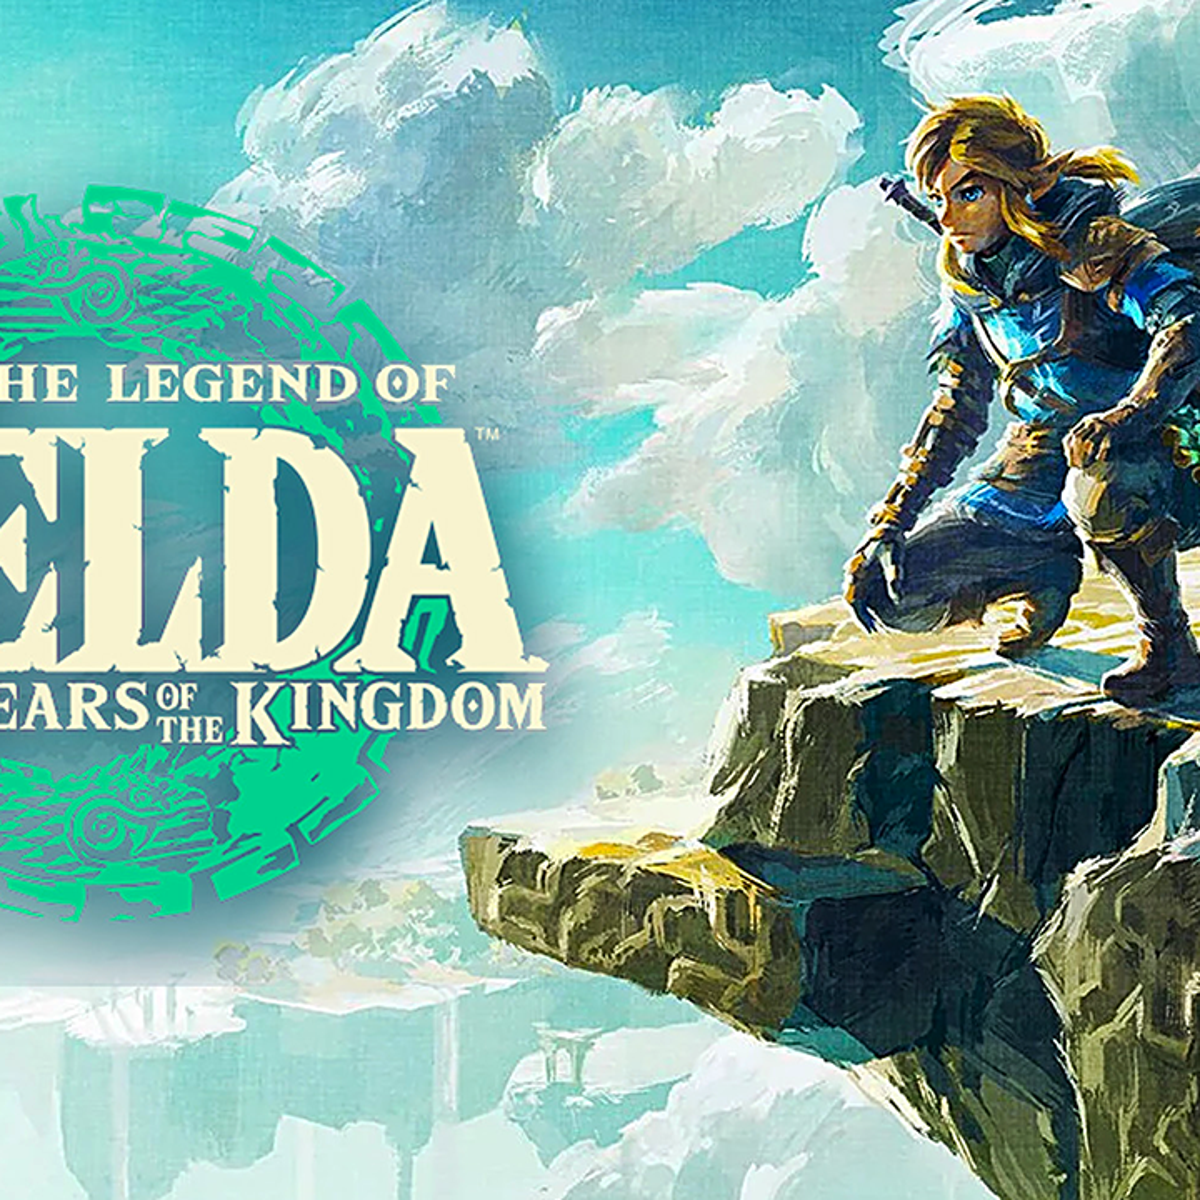 Quantas Estrelas darias a The Legend of Zelda: Tears of the Kingdom?